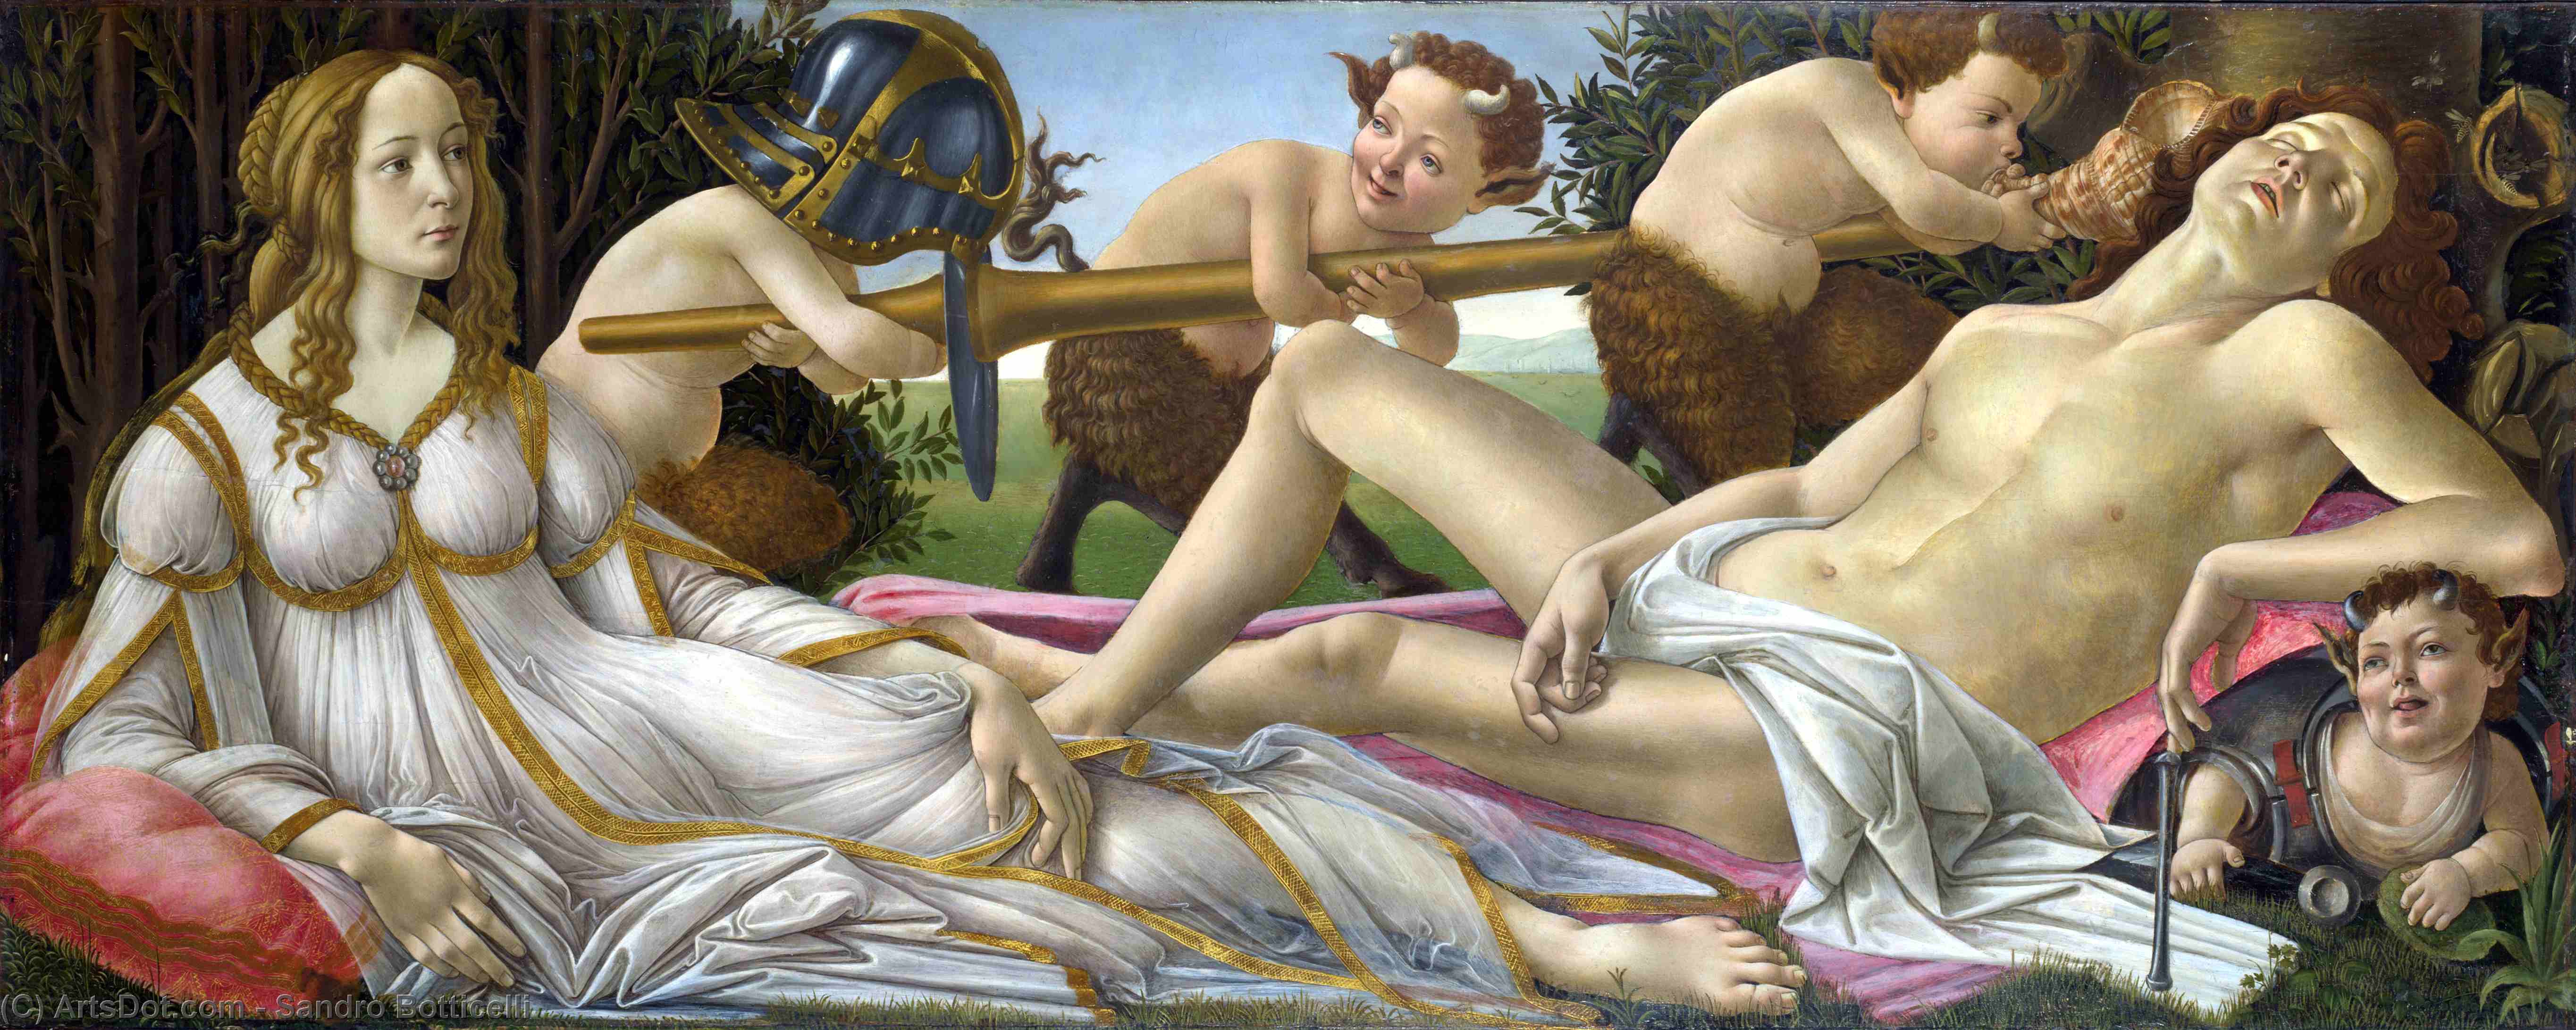 Achat Reproductions D'art Vénus et Mars, 1483 de Sandro Botticelli (1445-1510, Italy) | ArtsDot.com